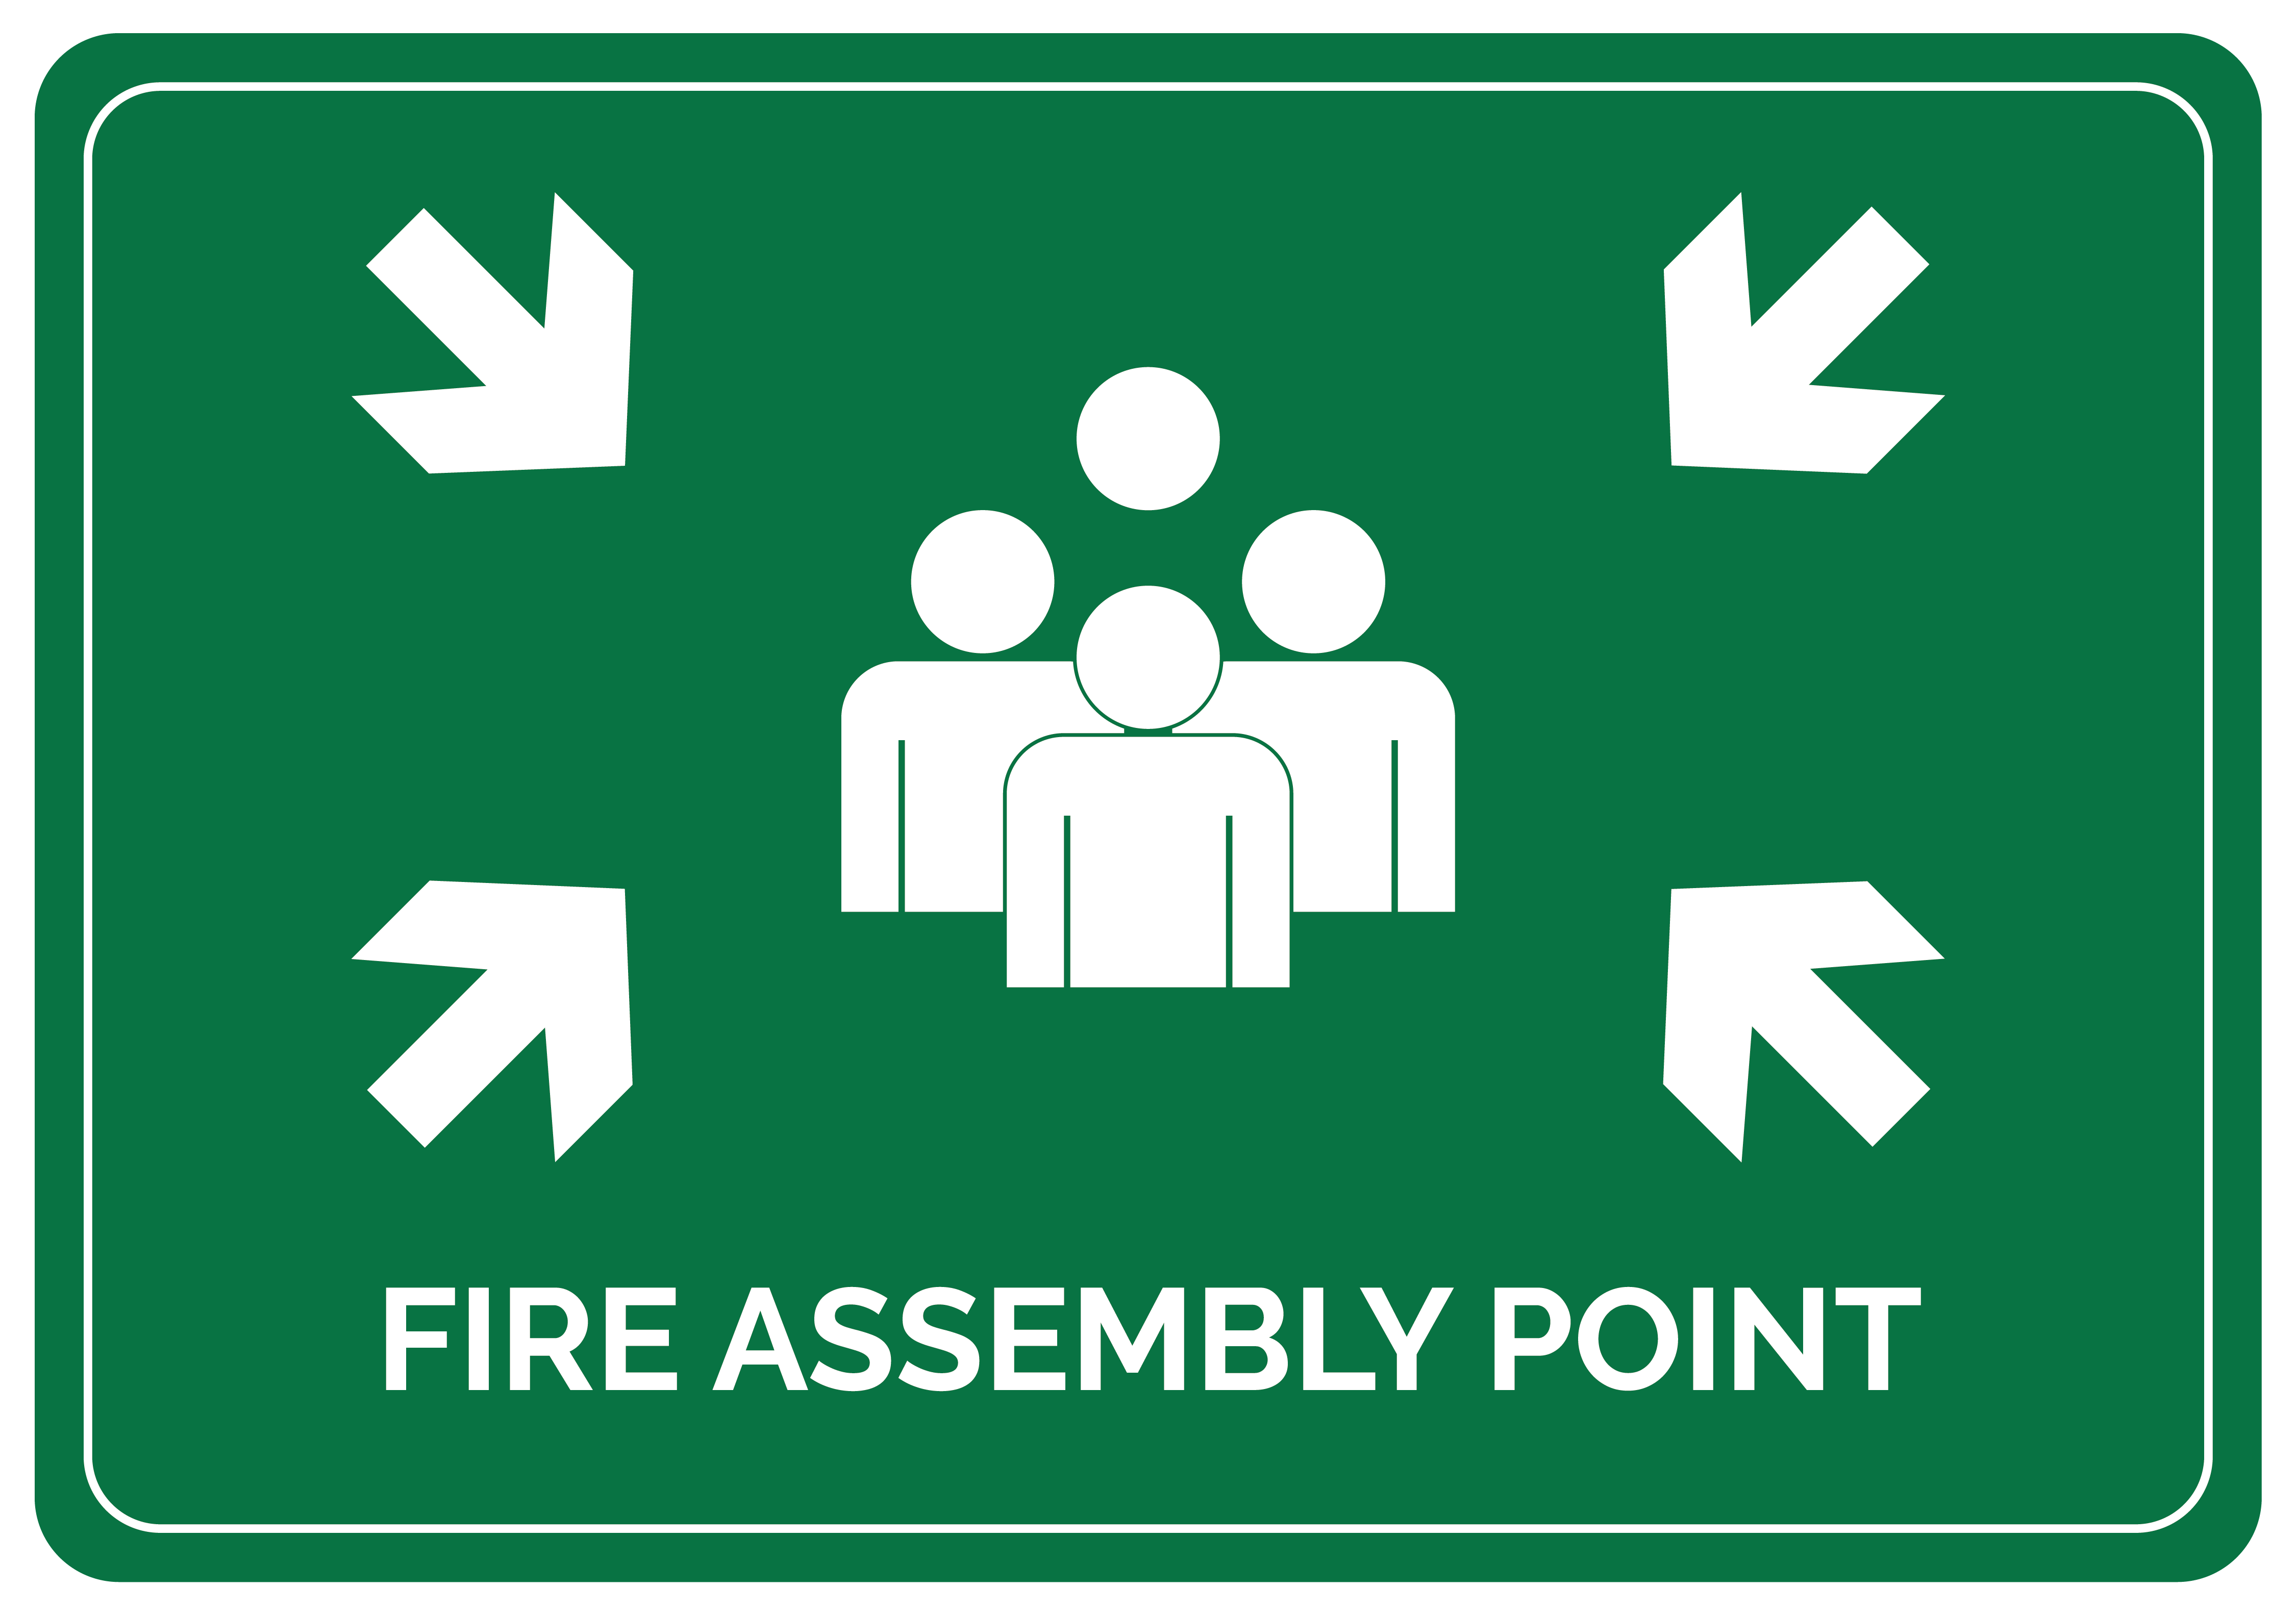 Fire assembly point - Pictogram vinyl sticker